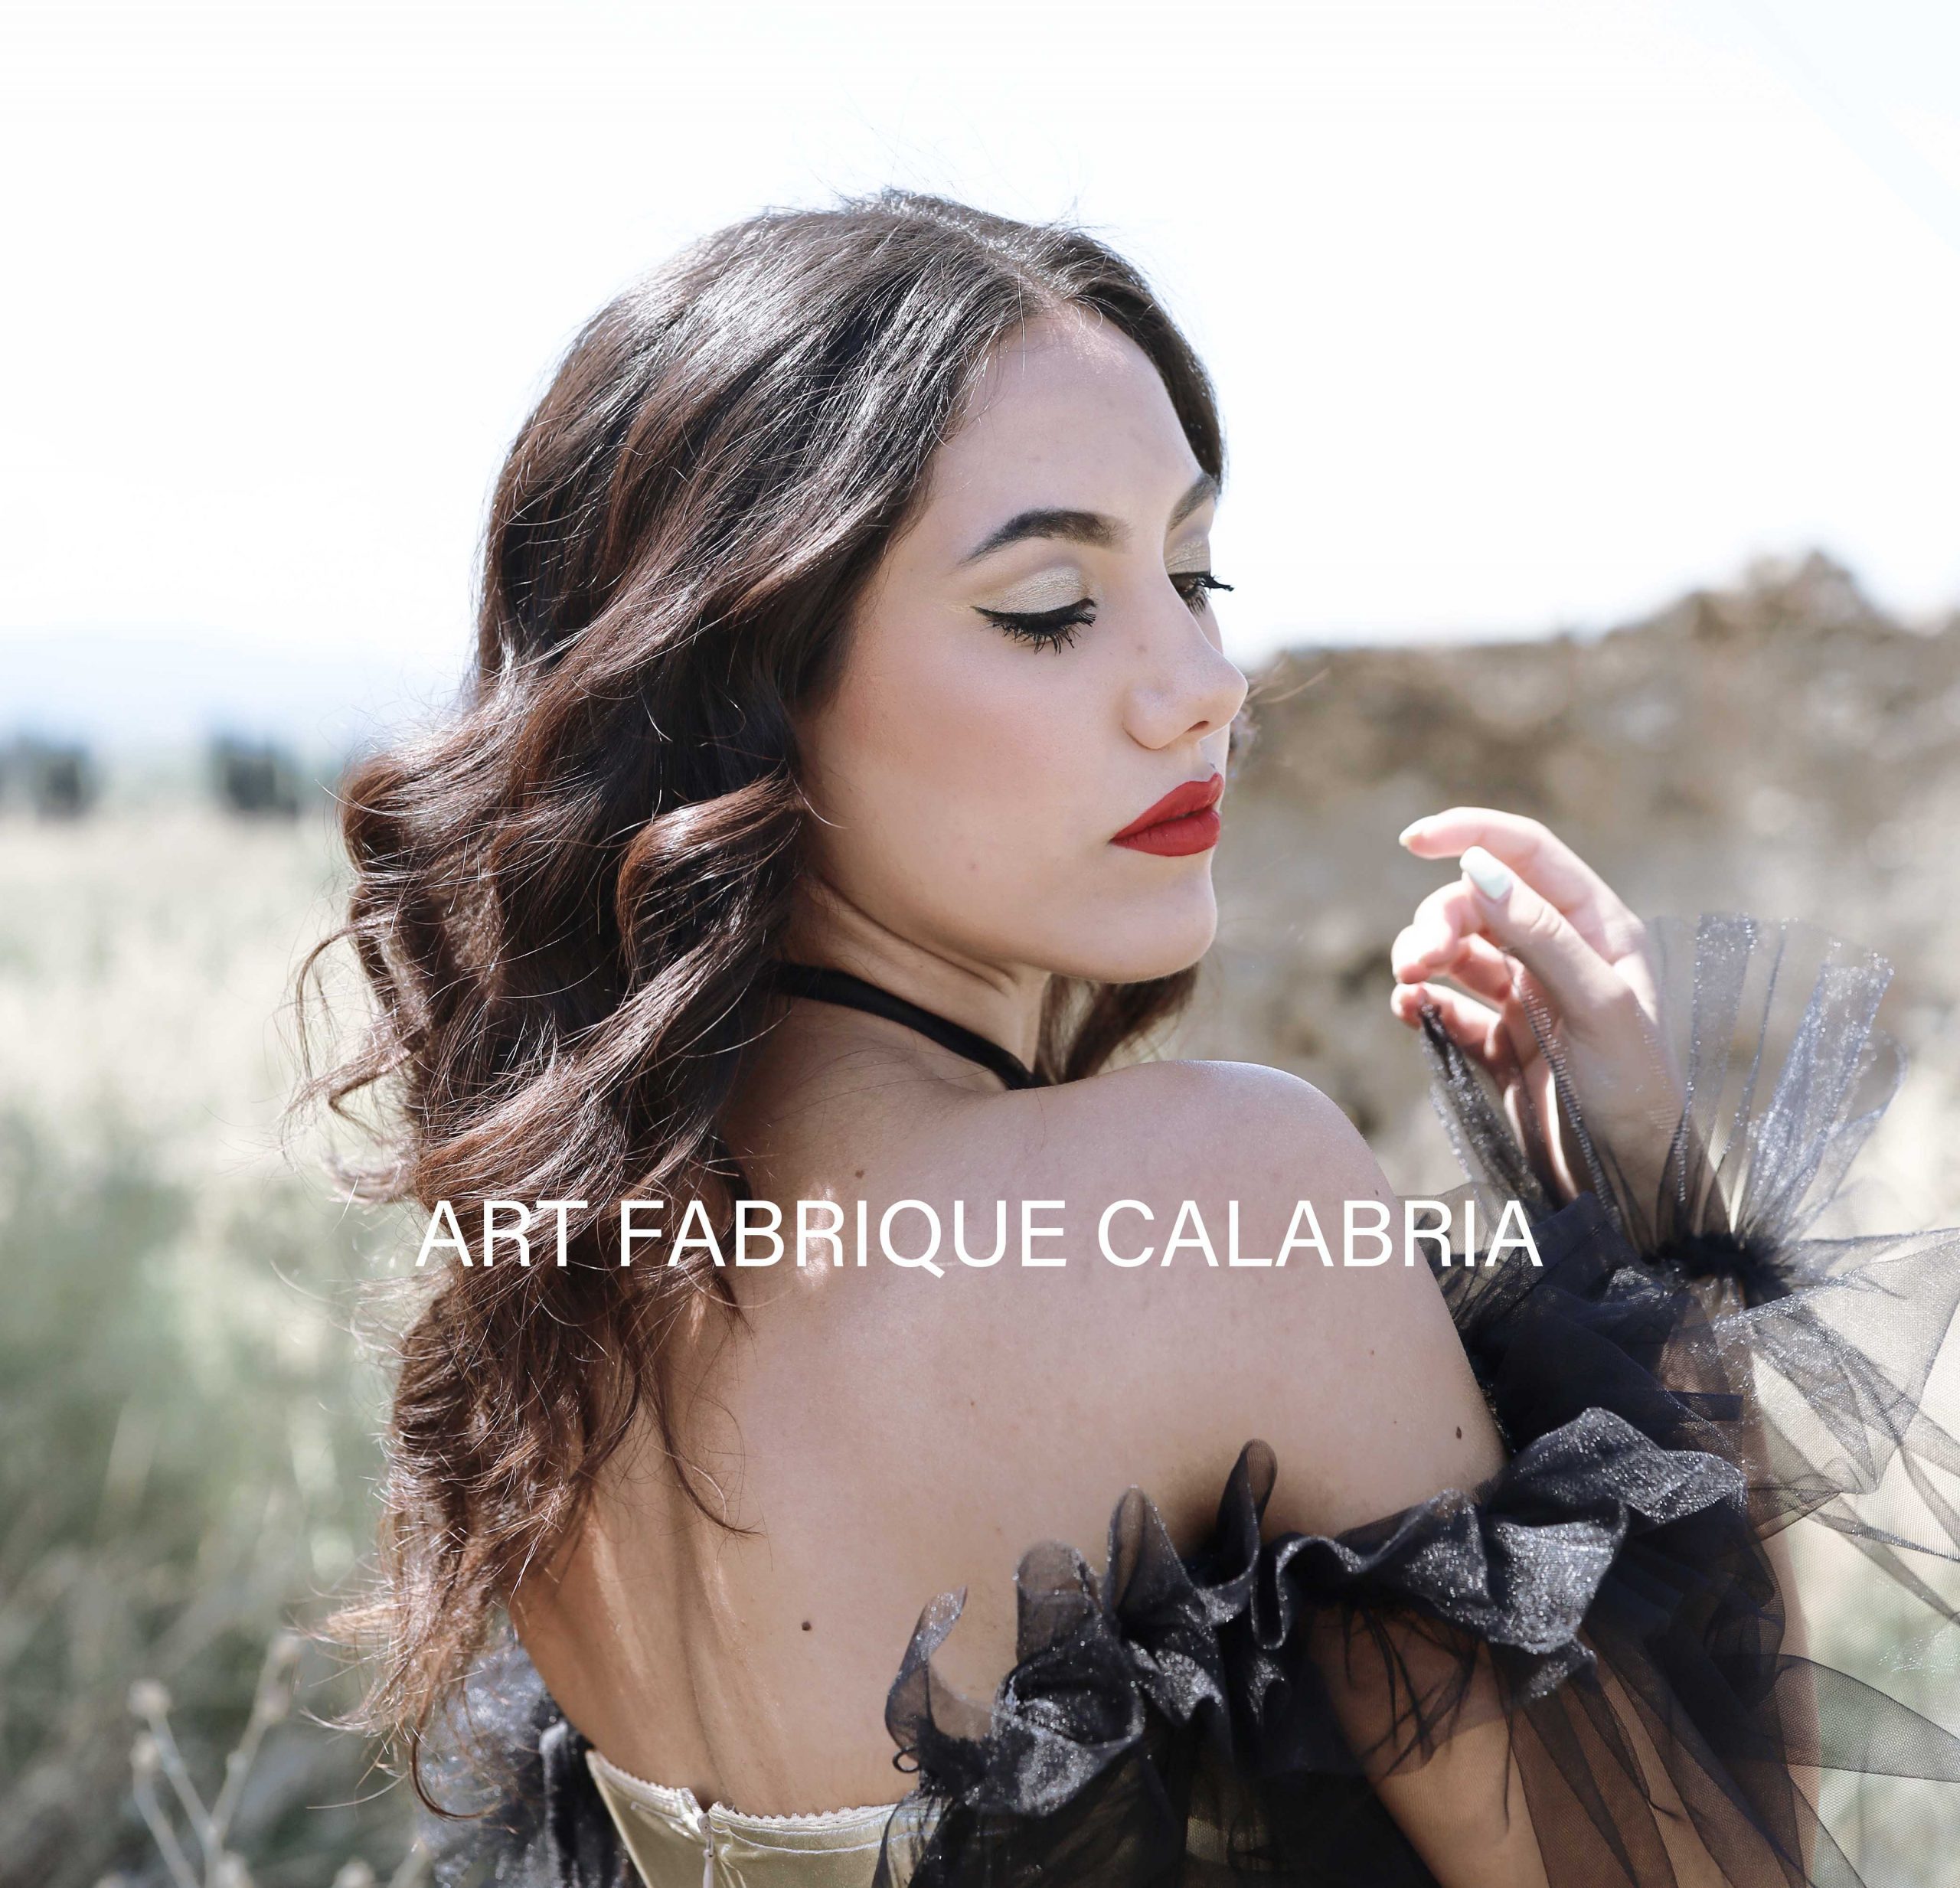 L’accademia New Style di Cosenza nel nuovo numero di Art Fabrique con la fashion designer Aurora De Luca